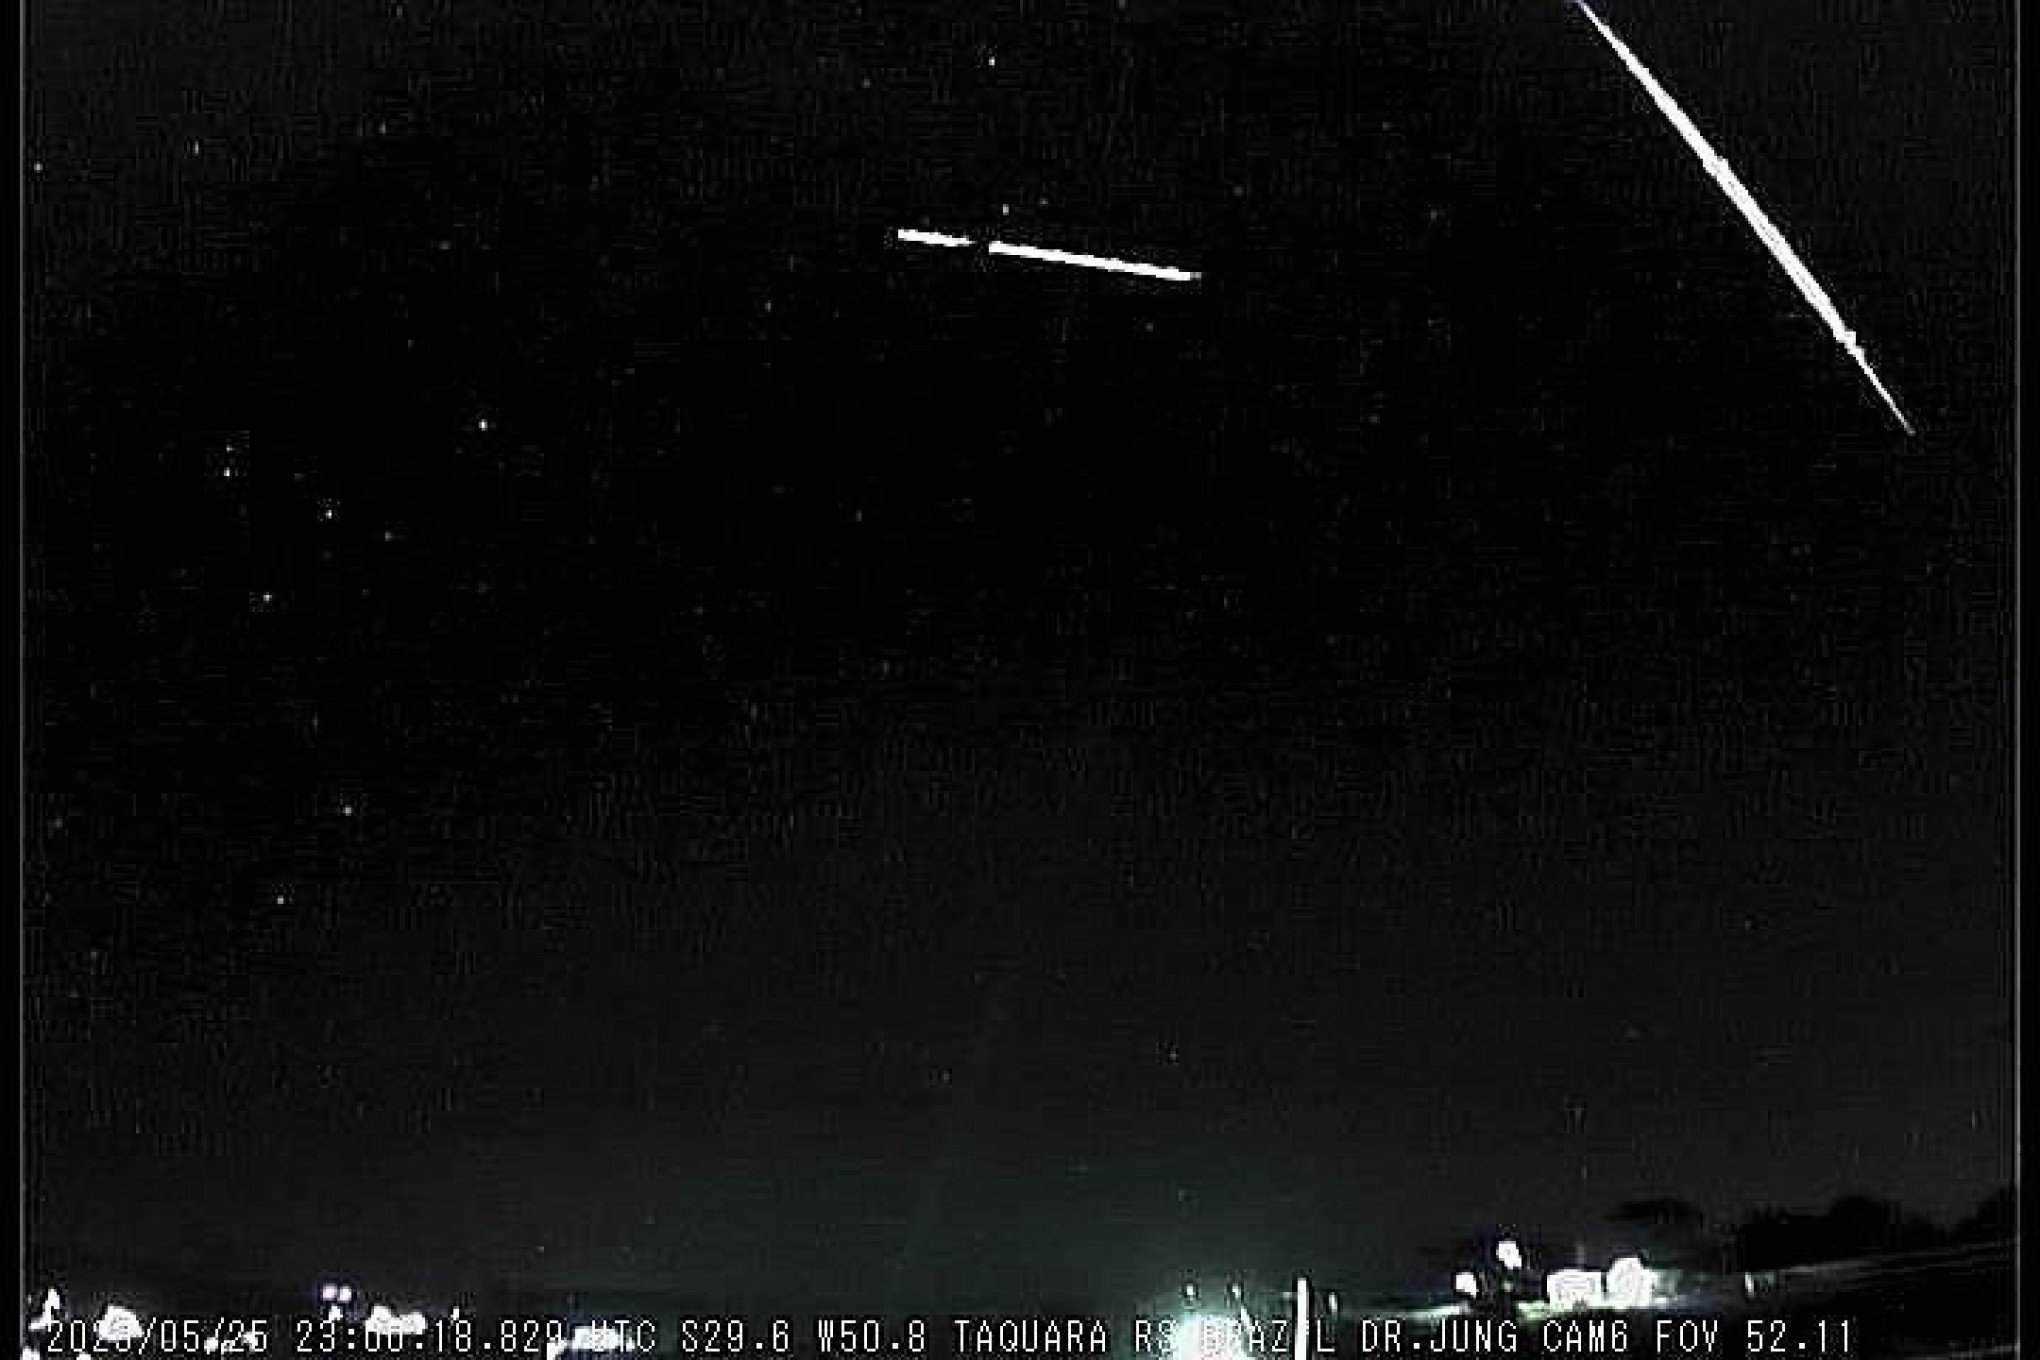 VÍDEO: Queda de meteoro é registrada durante passagem de avião no RS